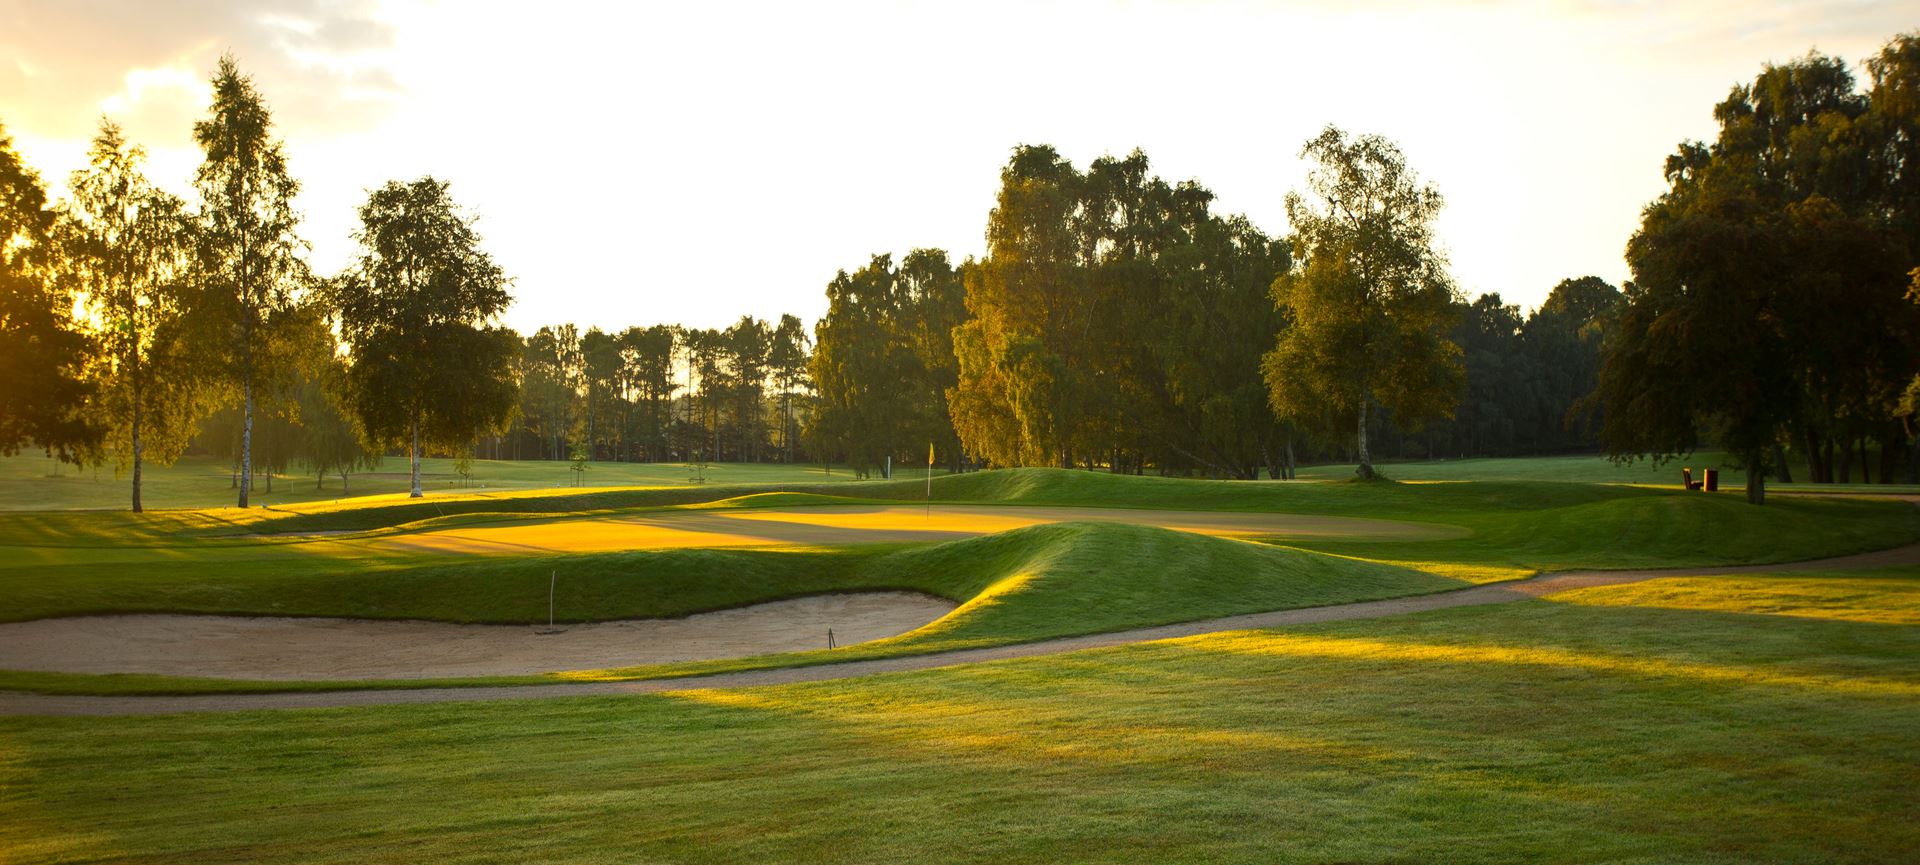 Danske golfbaner - Spil golf Helsingør Golf Club